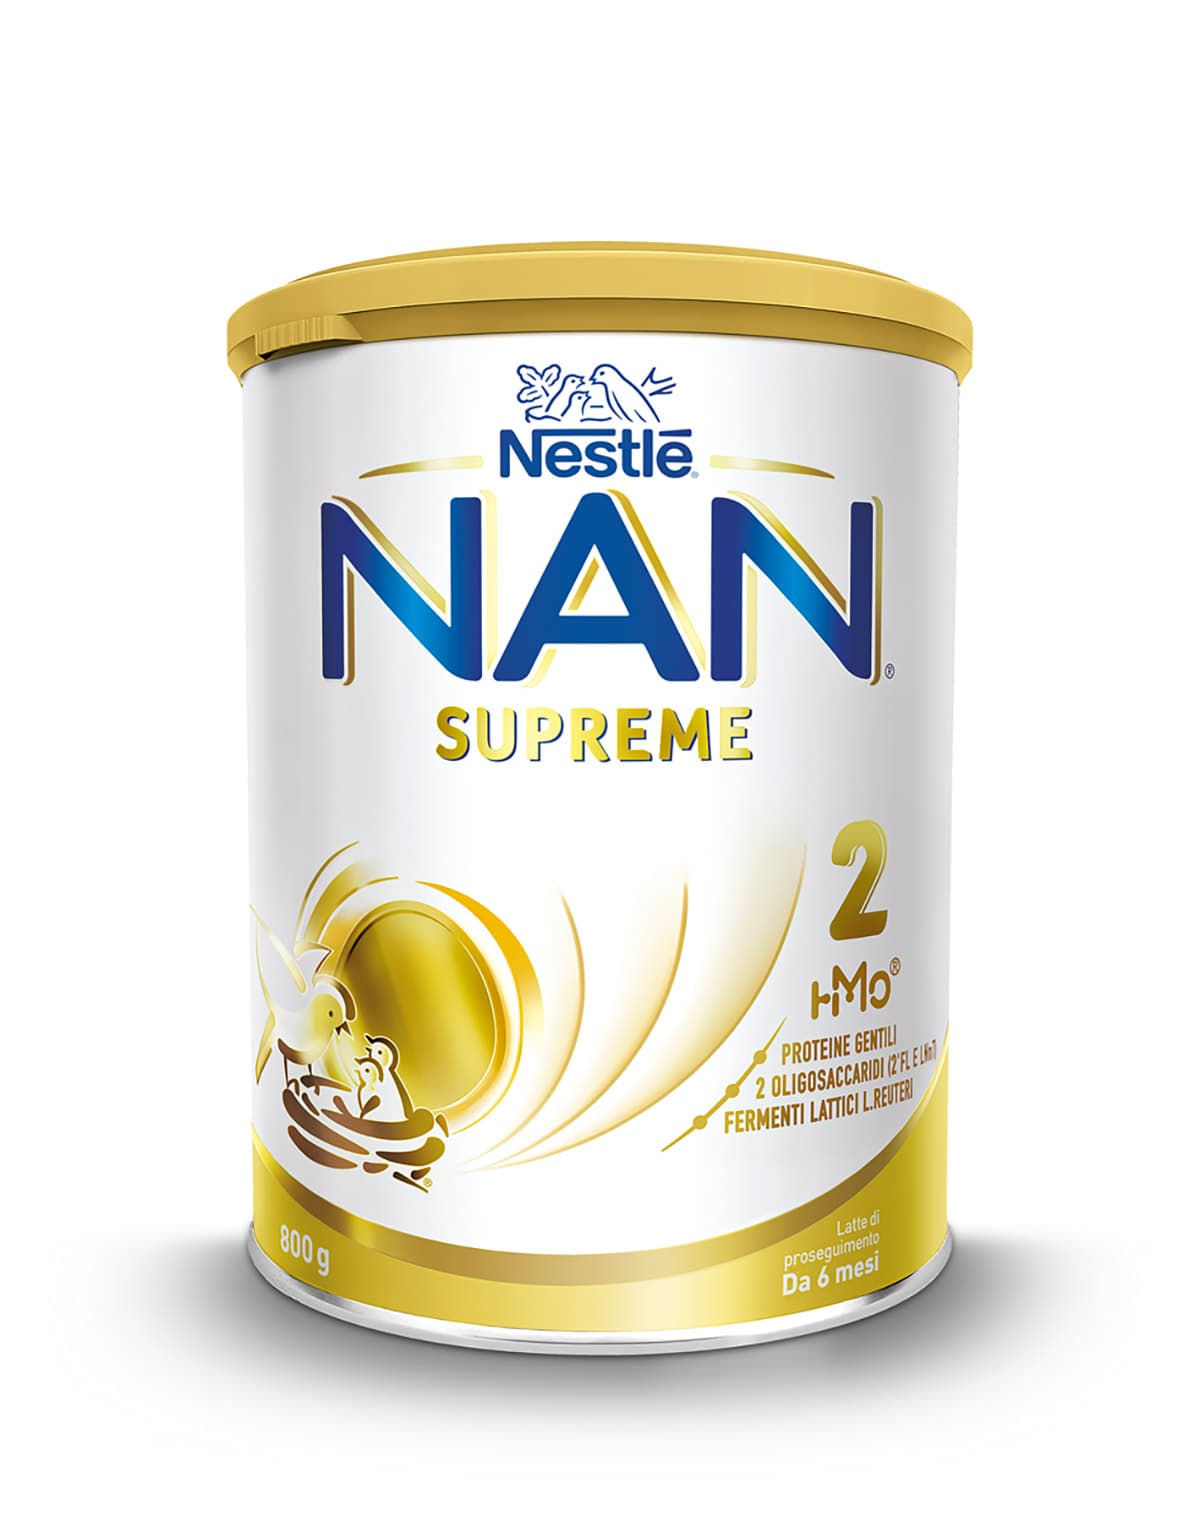 Nestlé NAN SUPREME 2 800g. Latte di proseguimento in polvere, dal 6°mese compiuto al 12°